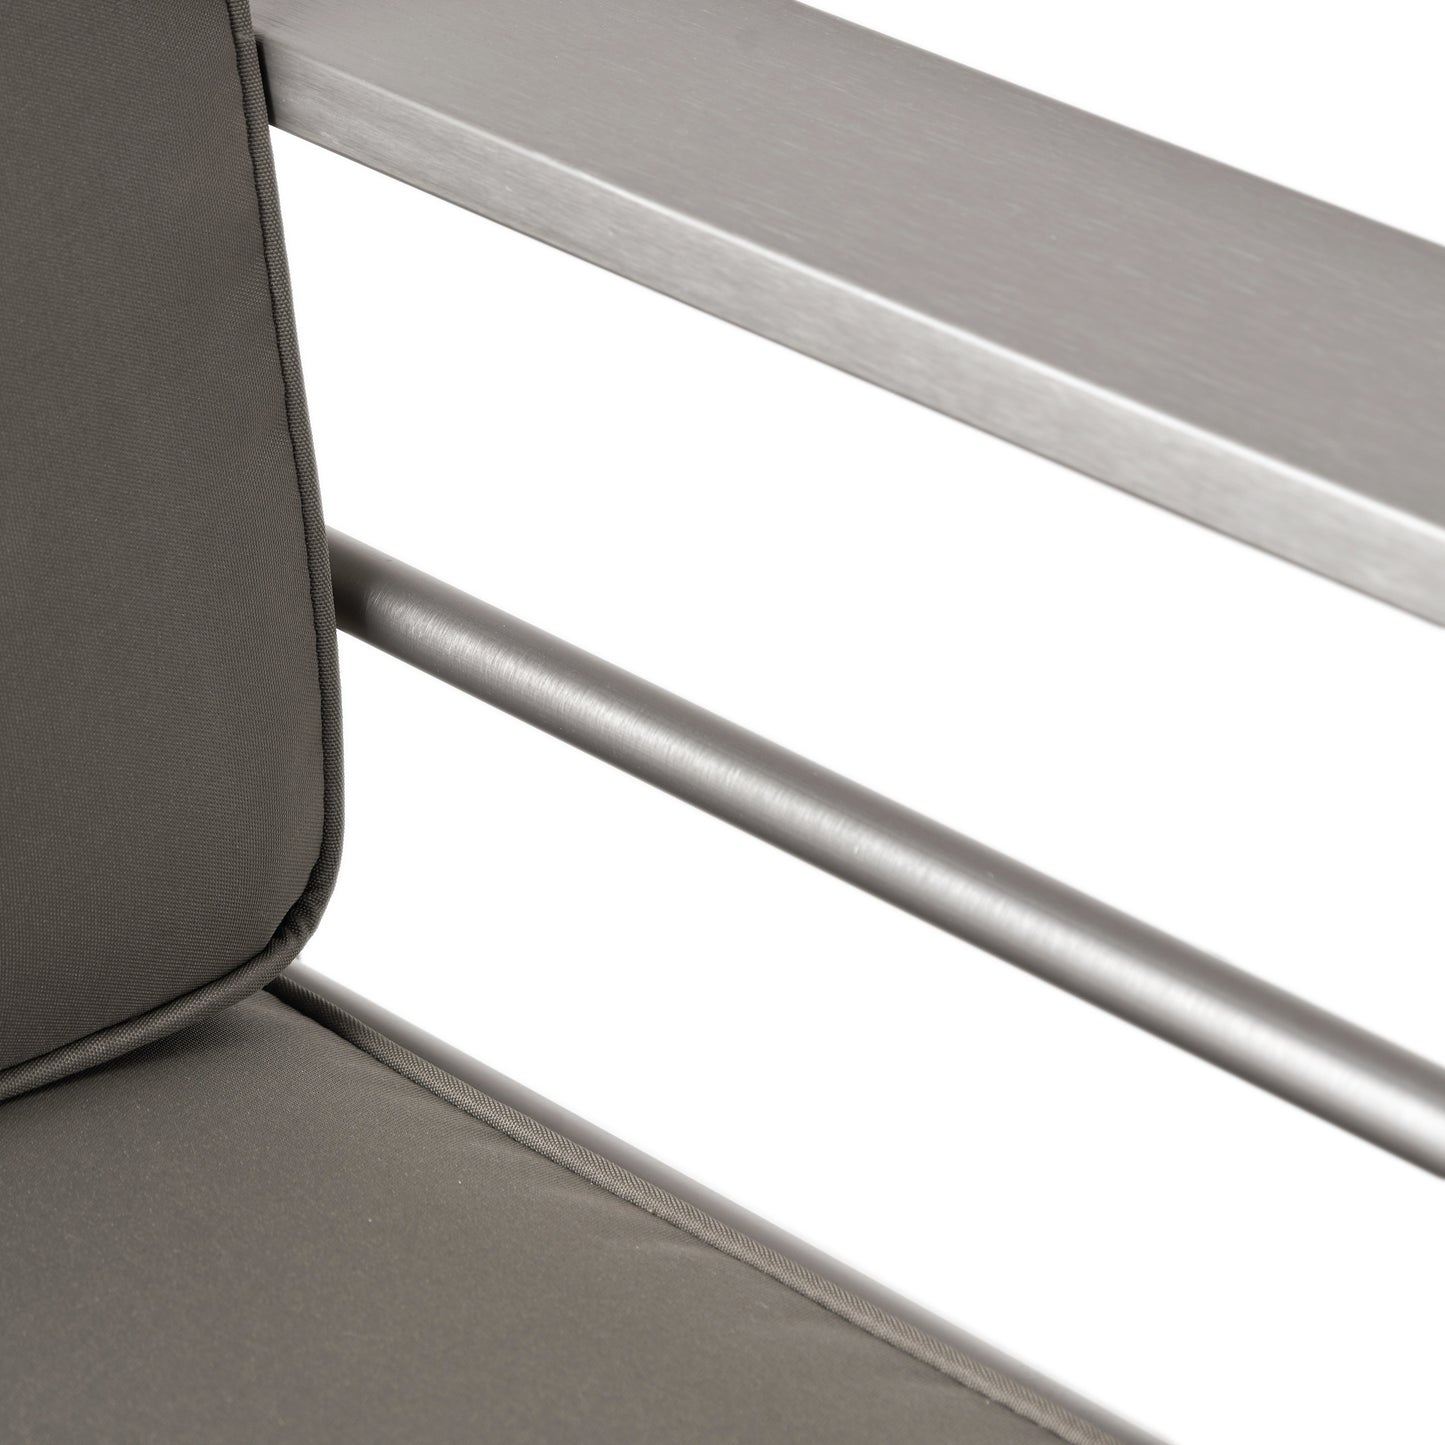 Cherie 5-Piece Outdoor Modern Aluminum Sectional Sofa Set